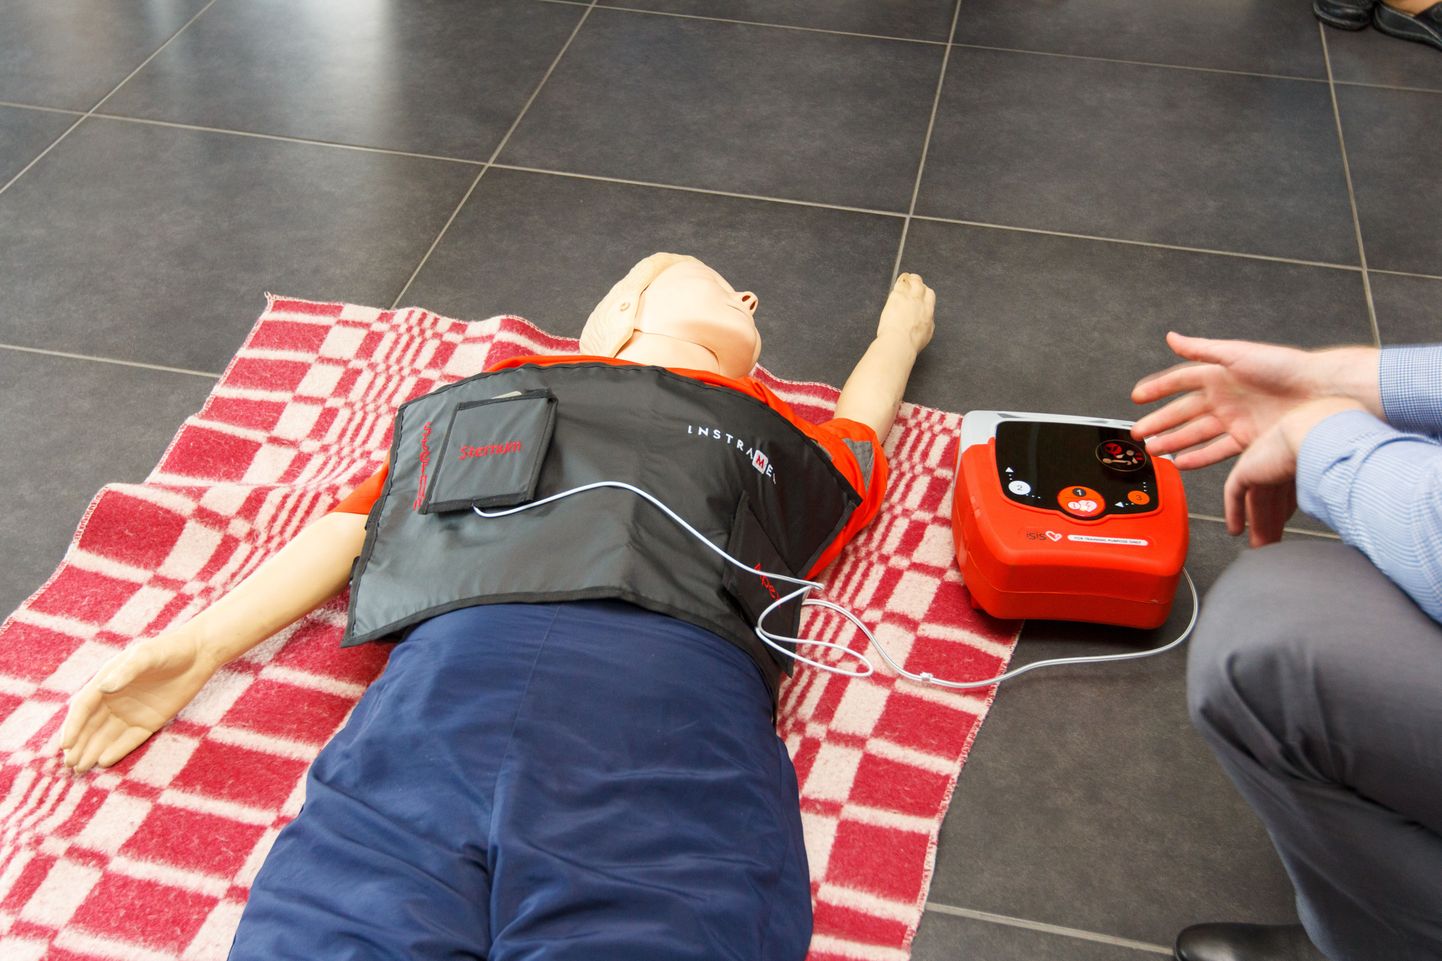 AED ehk automaatne kehaväline defibrillaator on nüüd Valga spordihalli varustuse hulgas.


Foto: Arvo Meeks/Valgamaalane